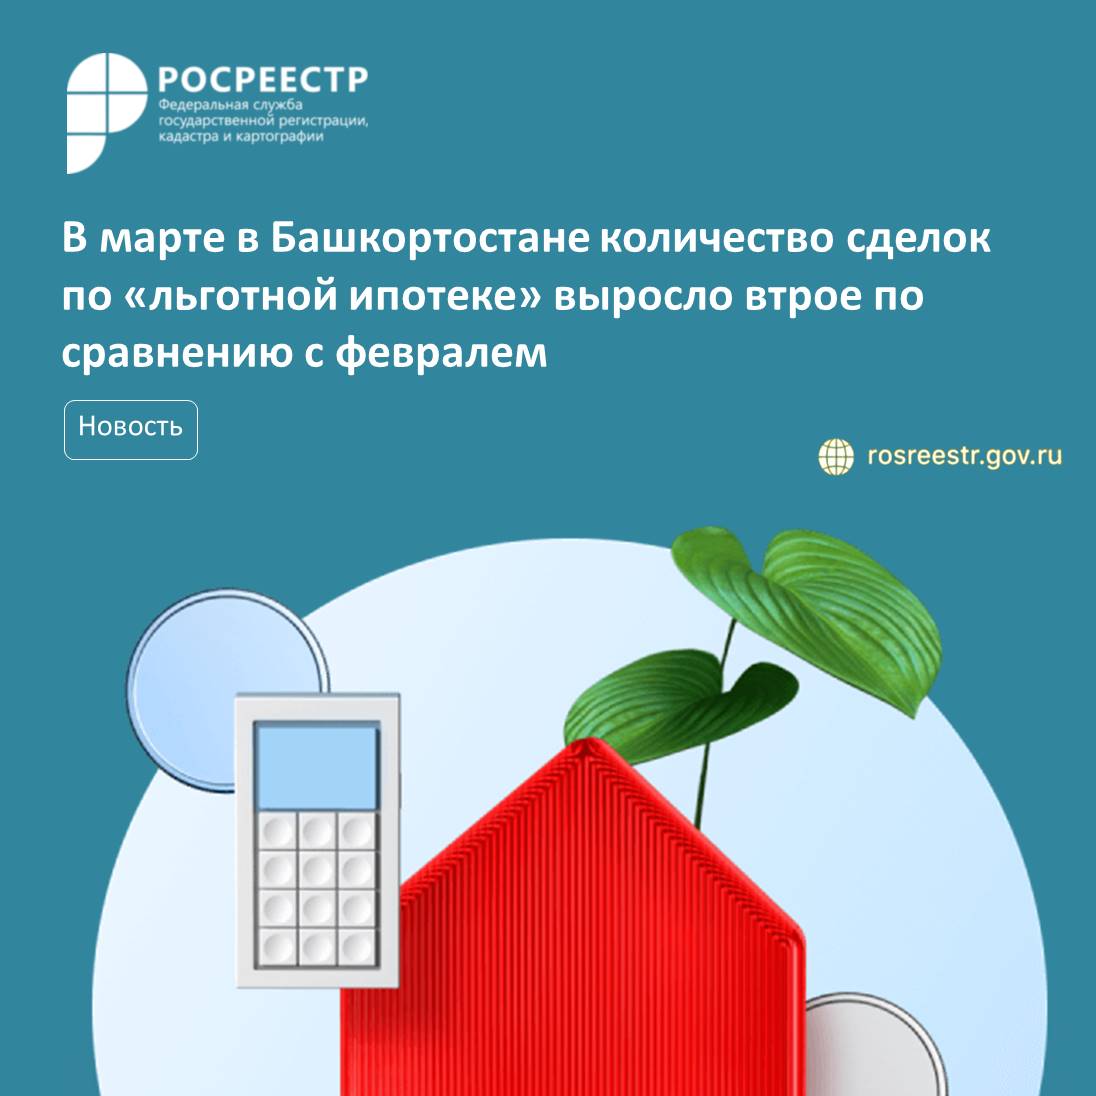 В марте в Башкортостане количество сделок по «льготной ипотеке» выросло втрое по сравнению с февралем